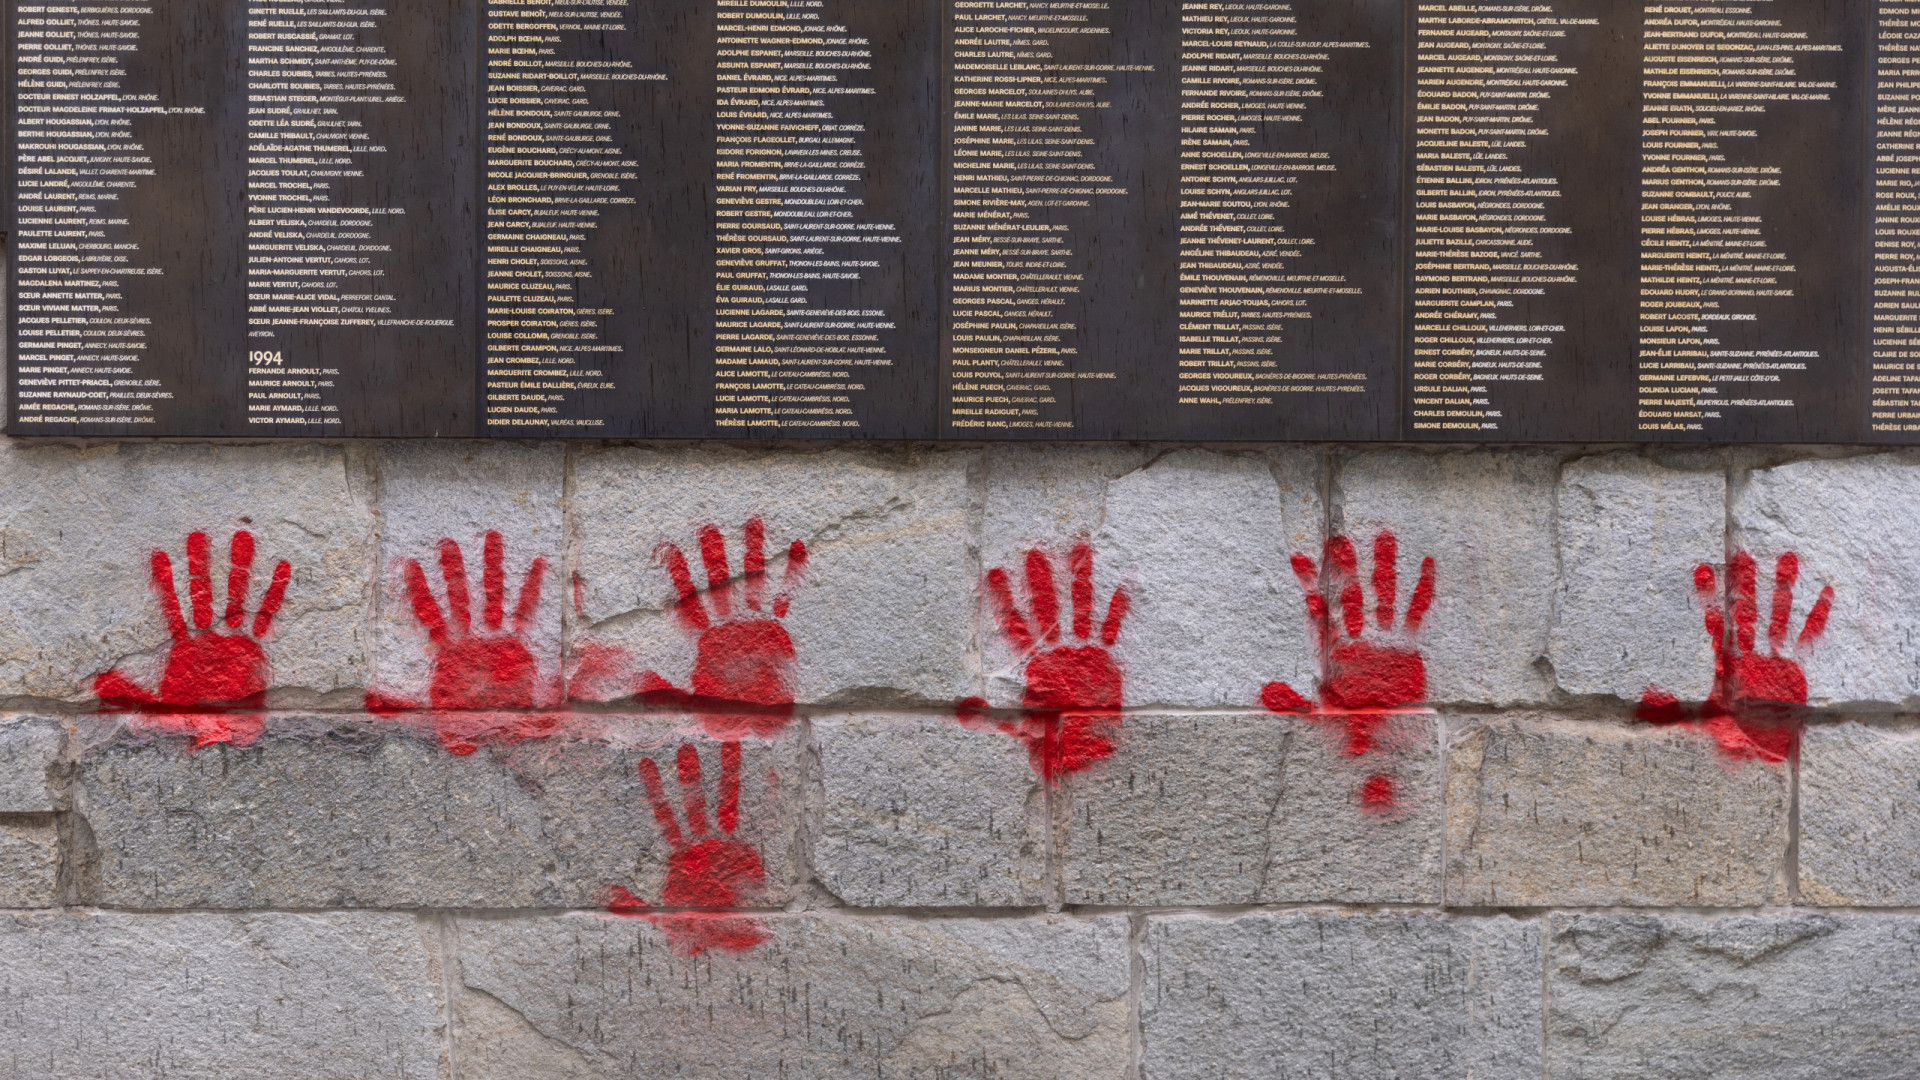 Detidos 3 búlgaros suspeitos de vandalizar mural do Holocausto em Paris